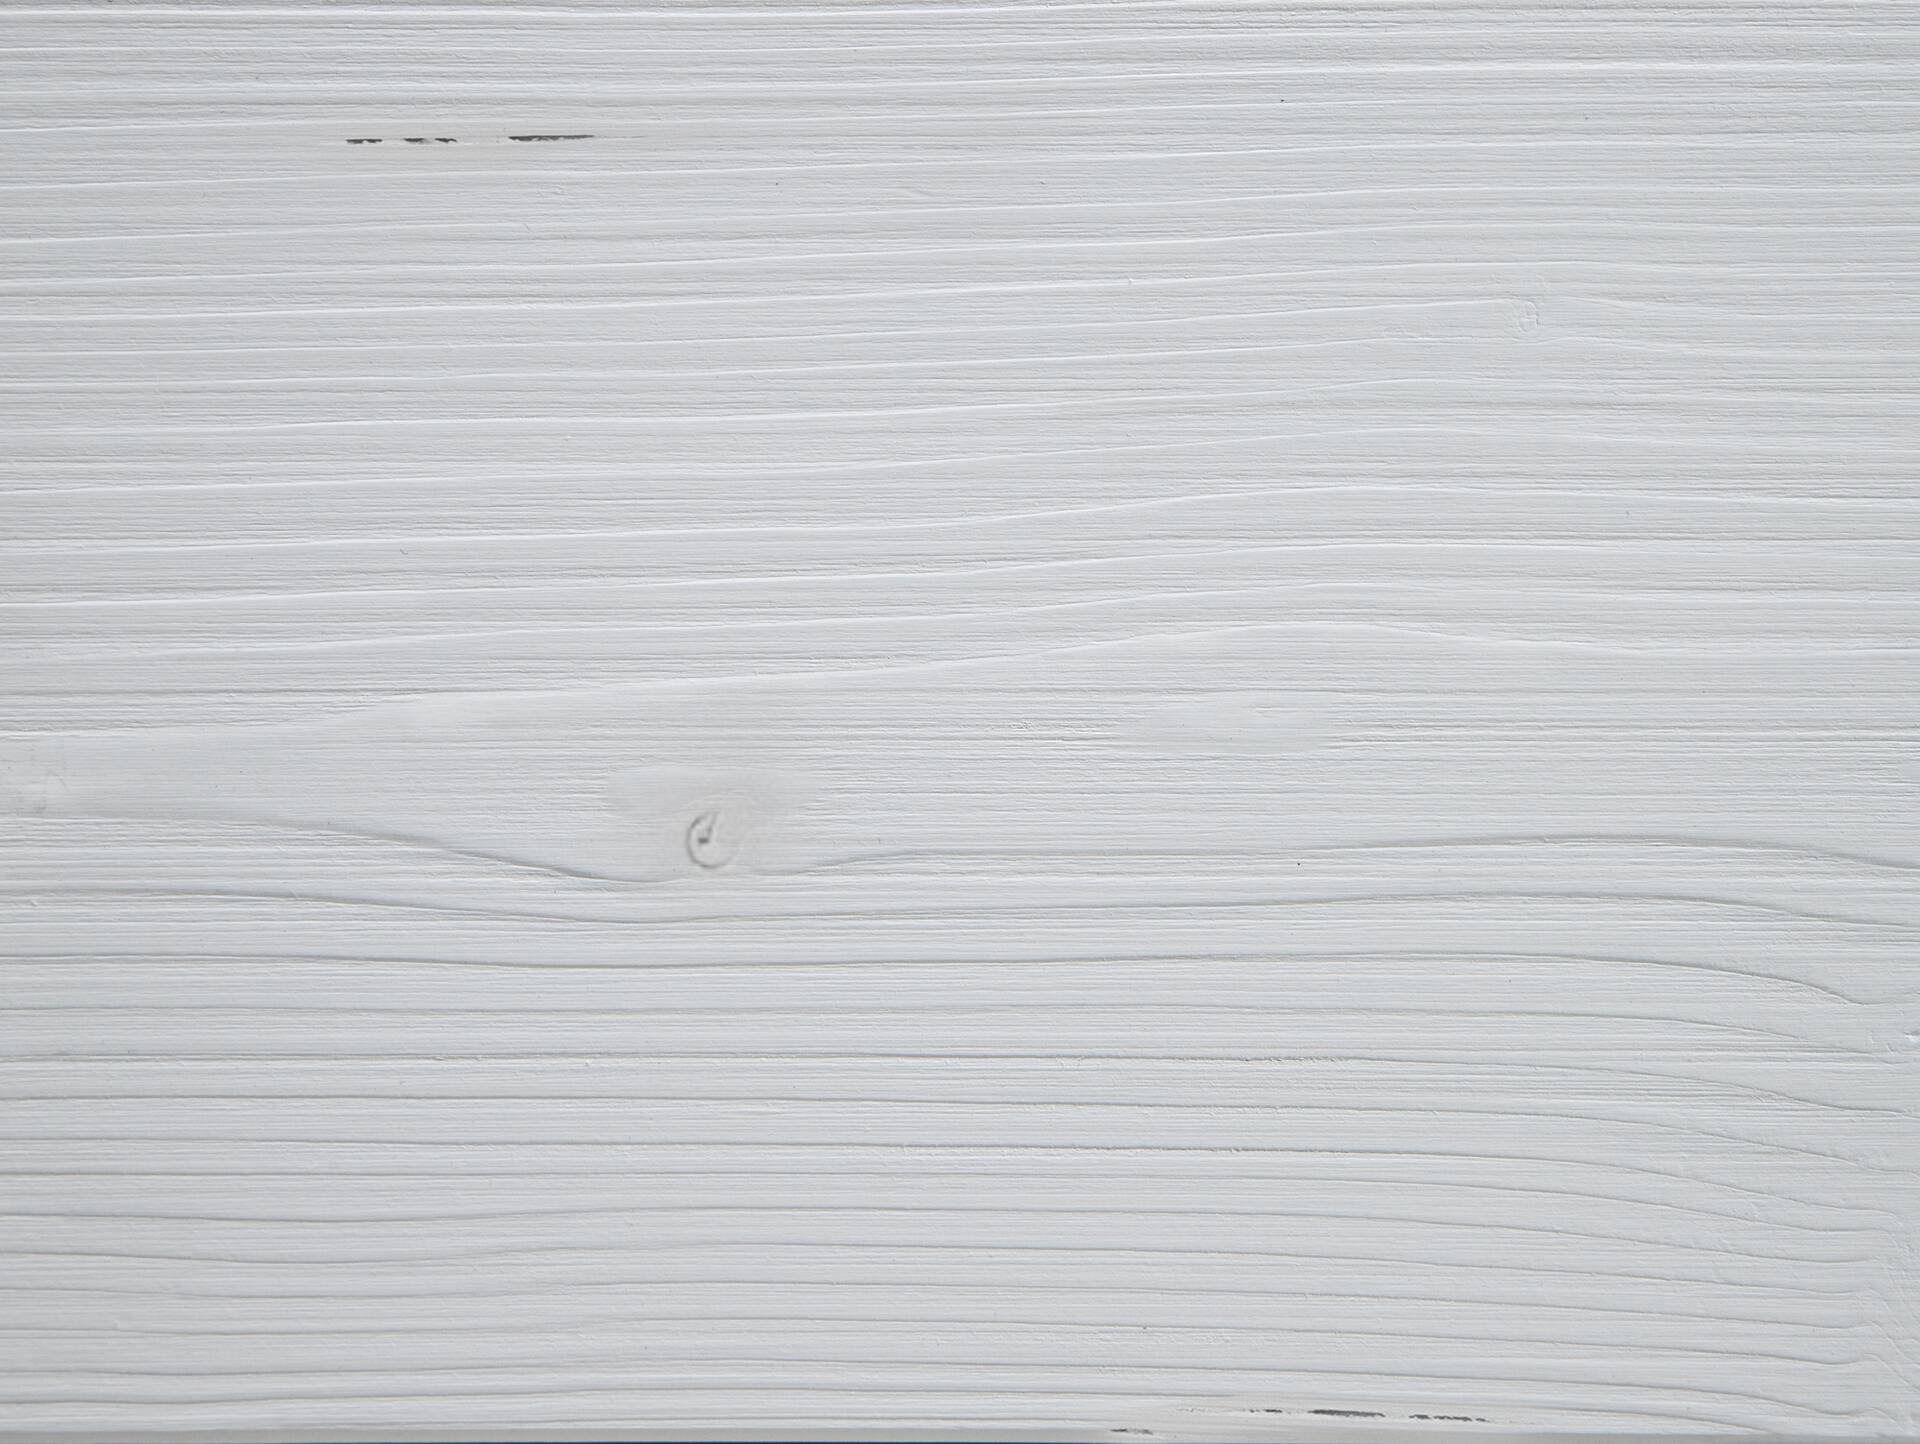 LUKY Bett Metallfuß, mit Polsterkopfteil, Material Massivholz, Fichte massiv 180 x 220 cm | weiss | Kunstleder Schwarz